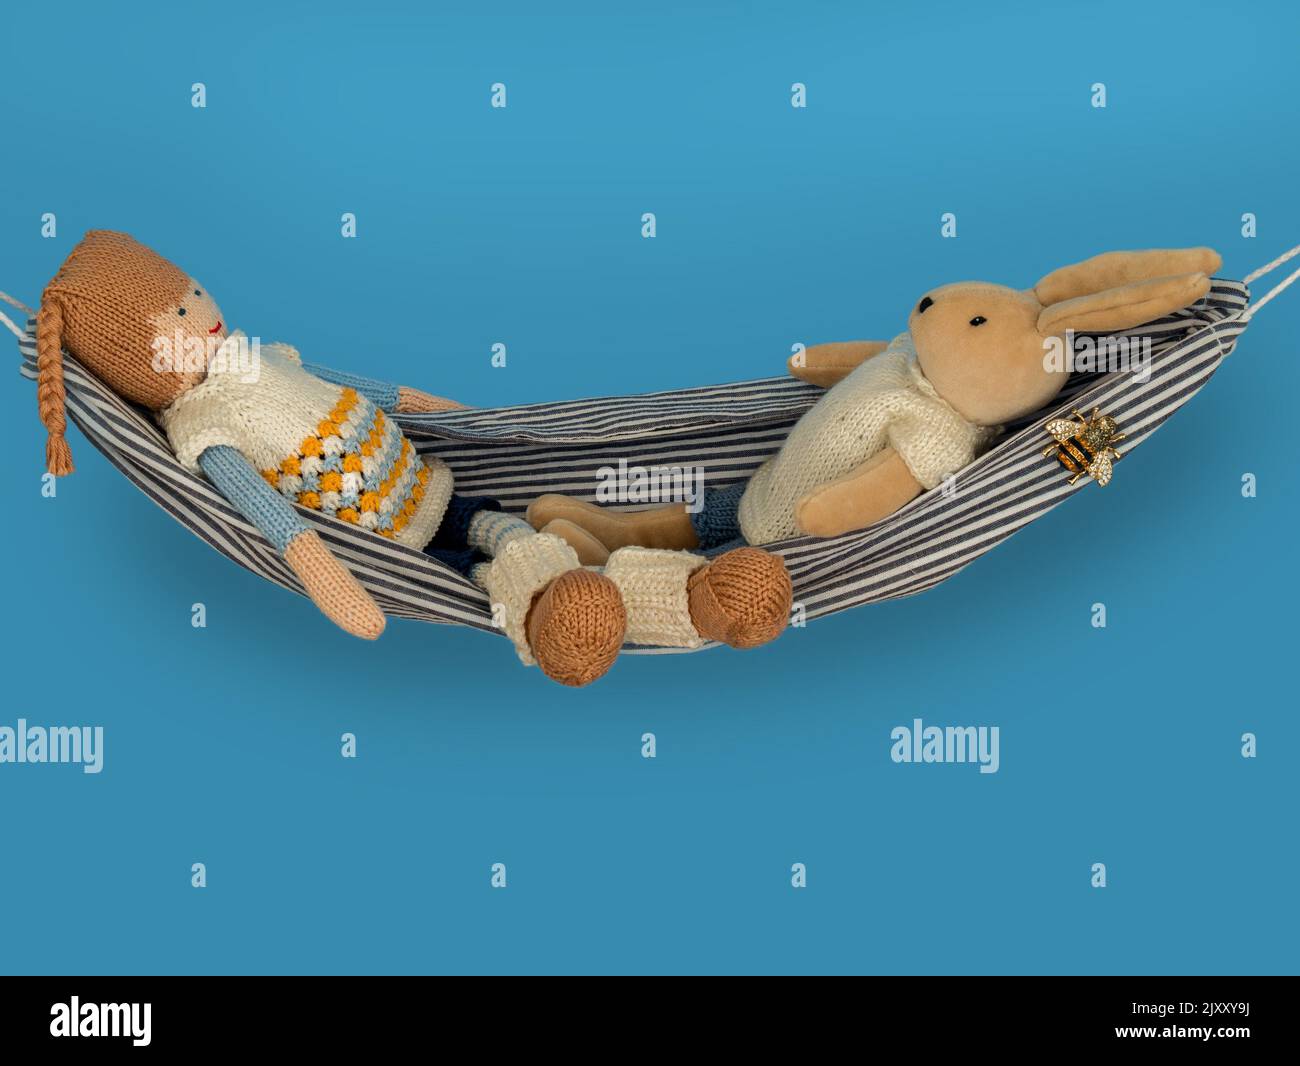 Imagen del concepto de relajación que muestra los juguetes blandos de dos niños (un conejo y una muñeca) relajándose en una hamaca frente a un fondo azul. Foto de stock